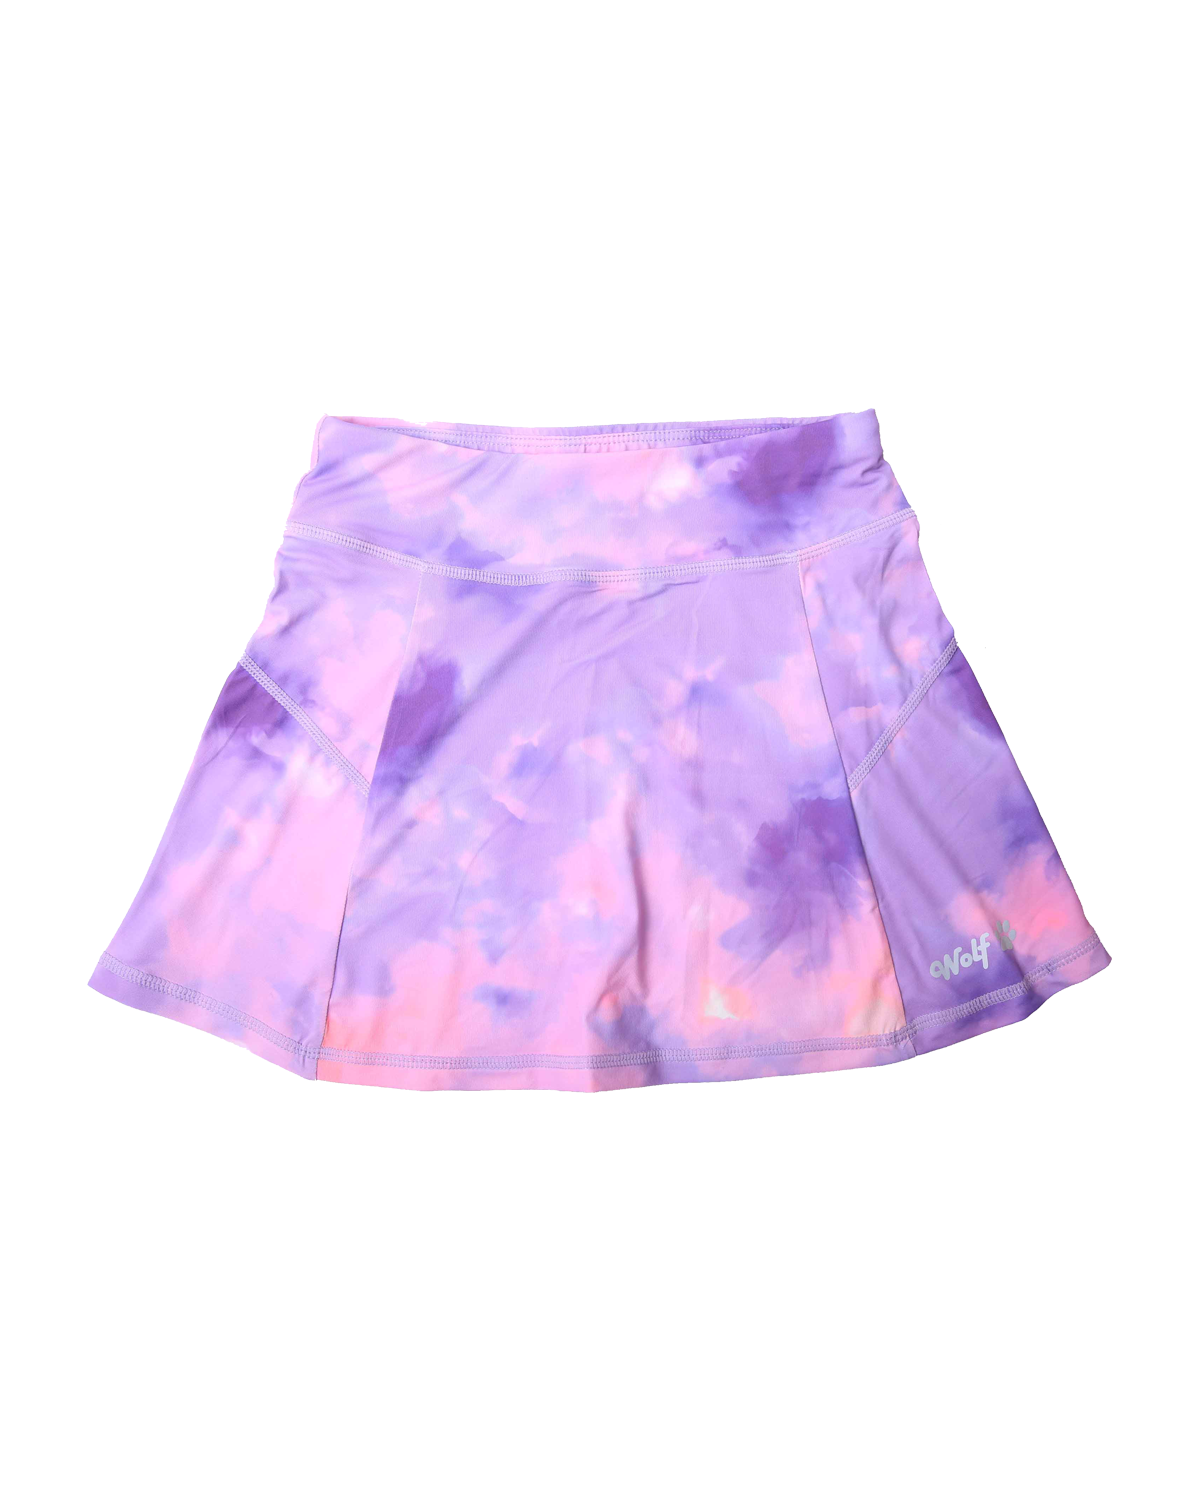 Dívčí funkční sukně - Wolf H2466, fialková / růžová Barva: Fialková, Velikost: 122